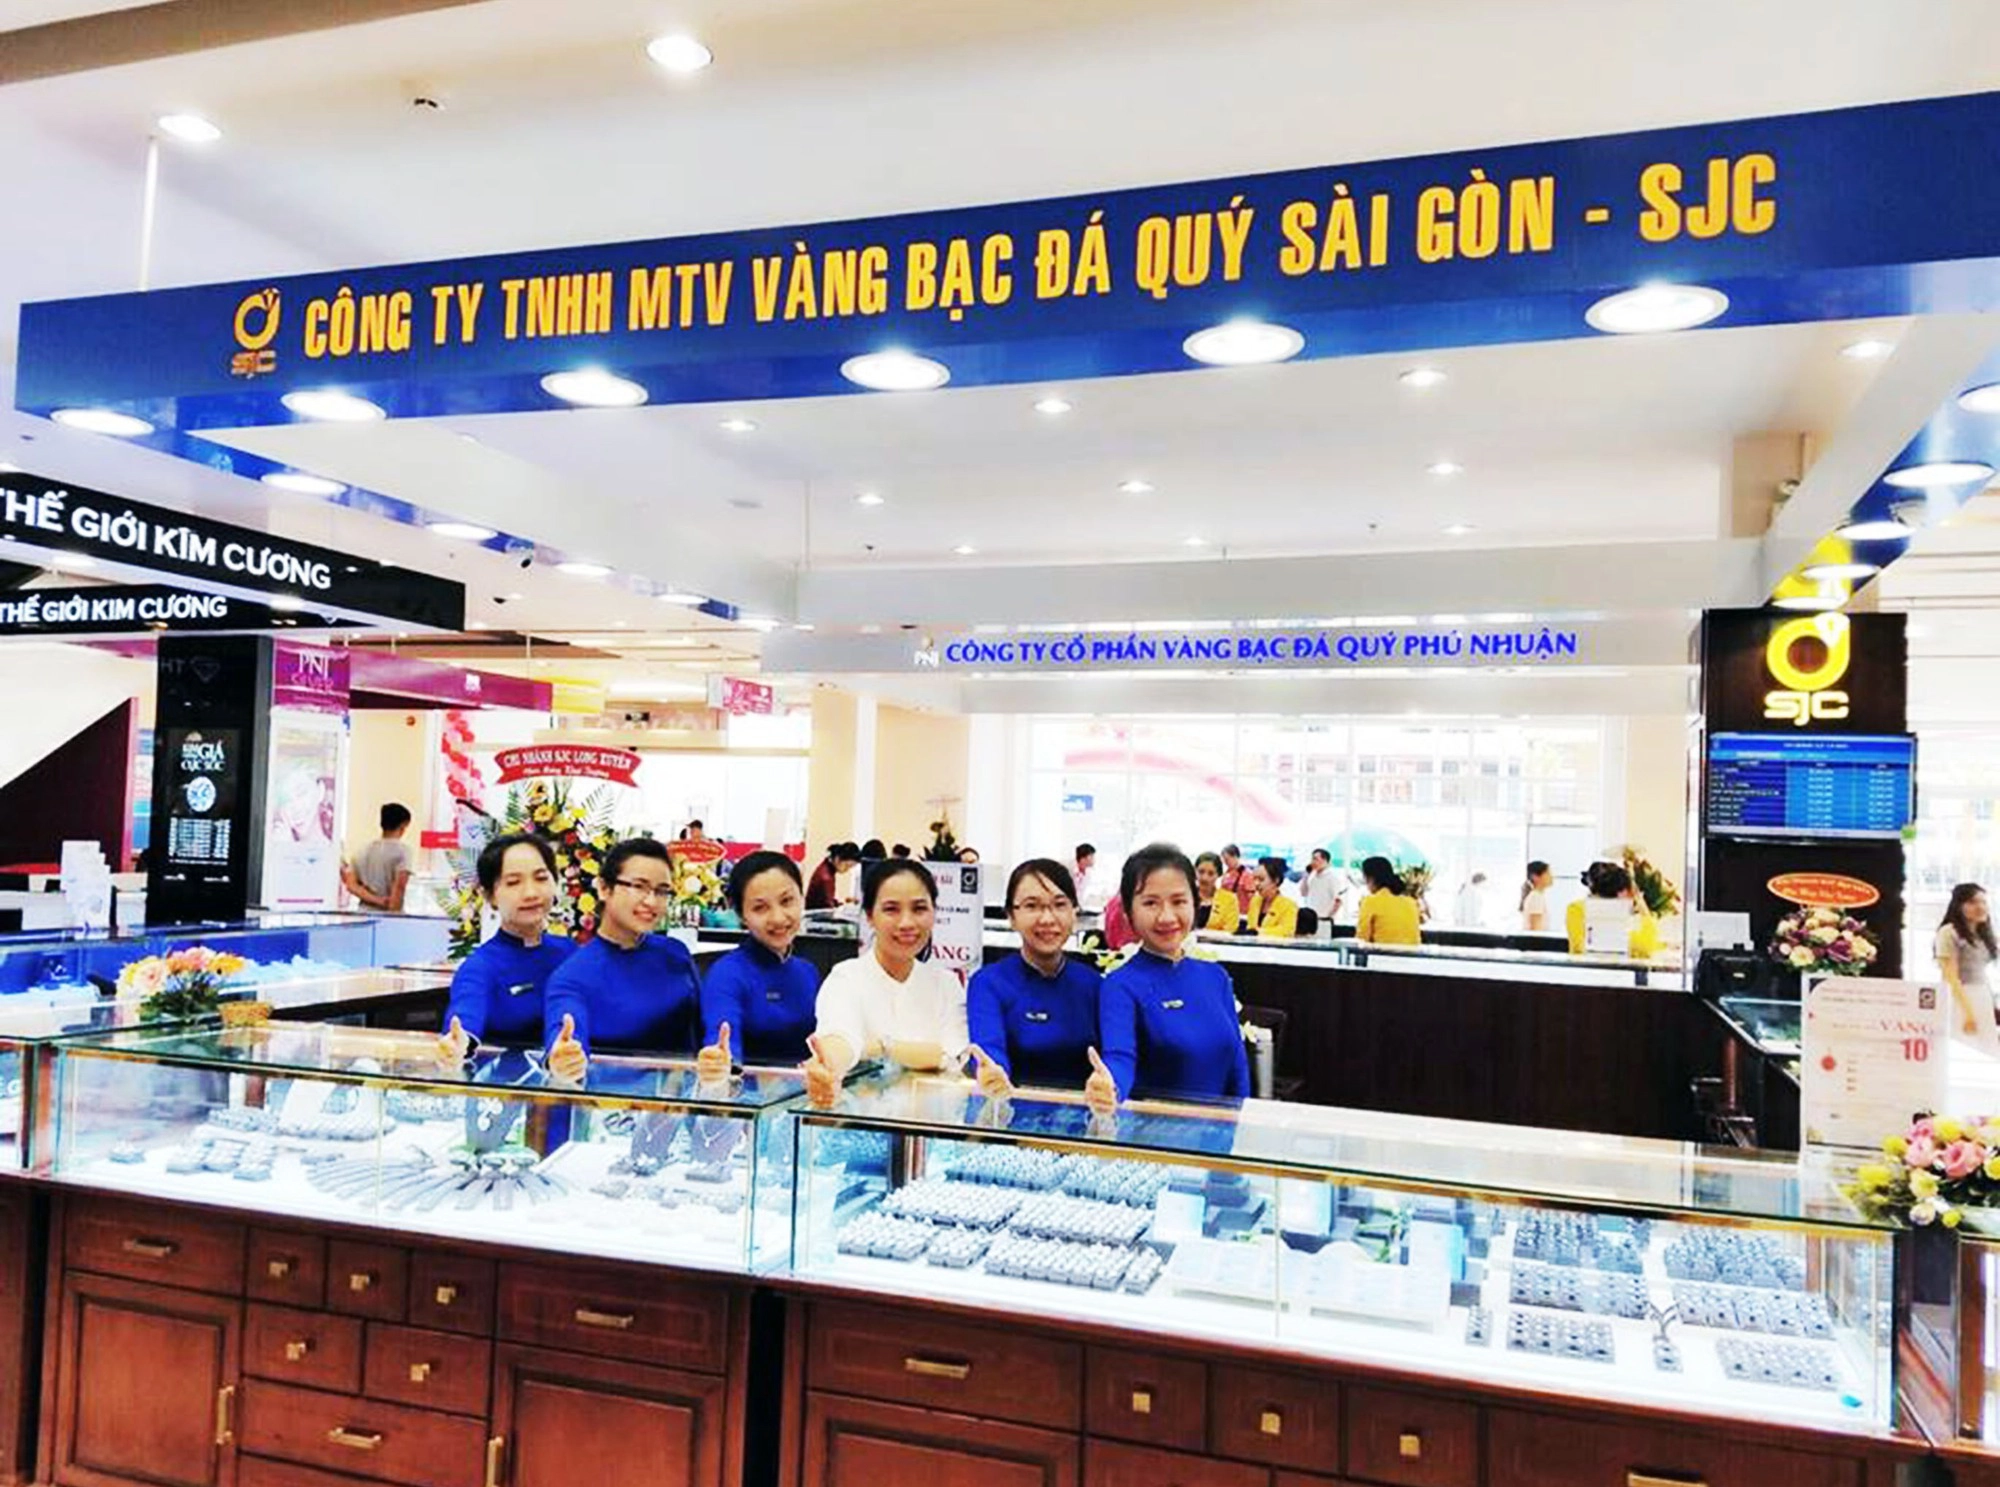 Công ty Vàng Bạc Đá Quý SJC là một trong những công ty hàng đầu tại Việt Nam trong thị trường vàng